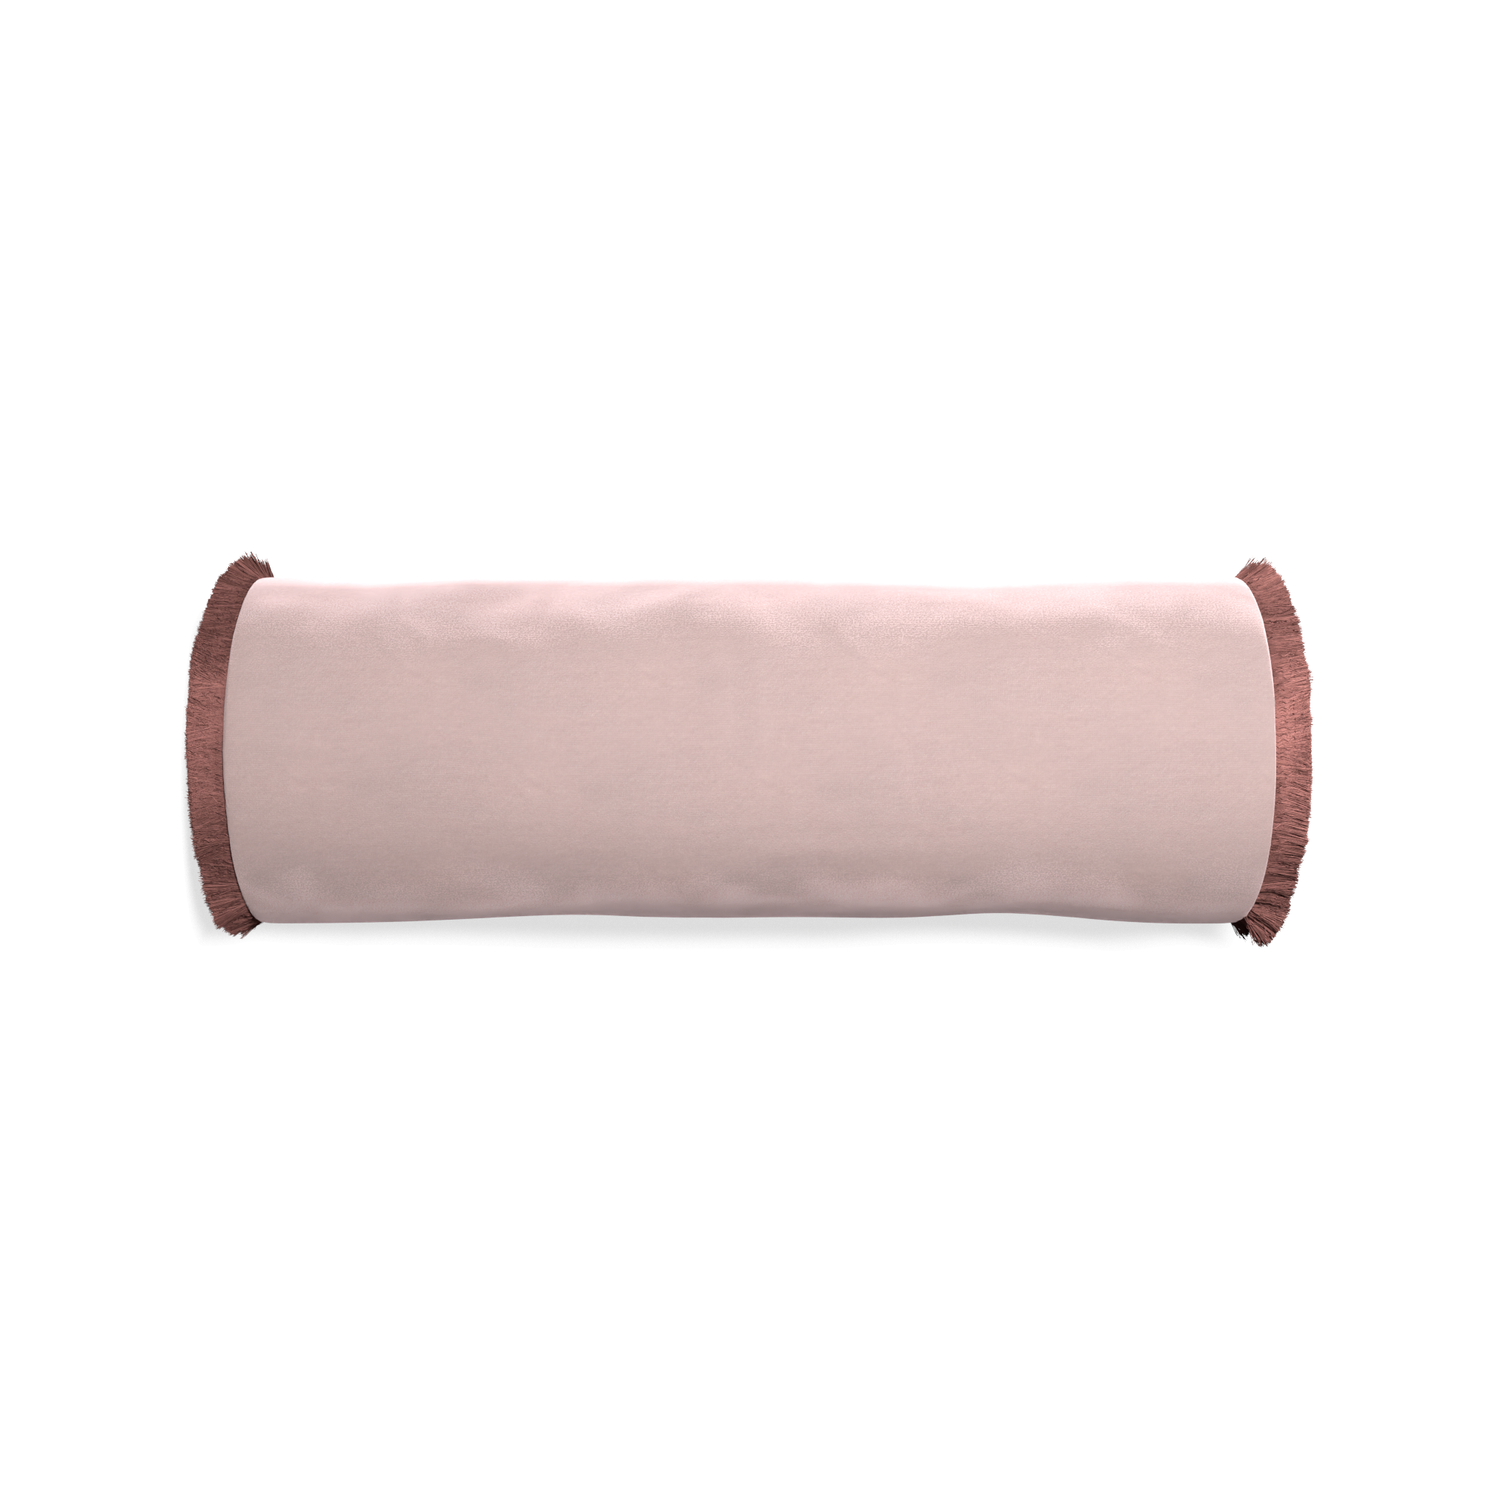 Bolster rose velvet custom pillow with d fringe on white background